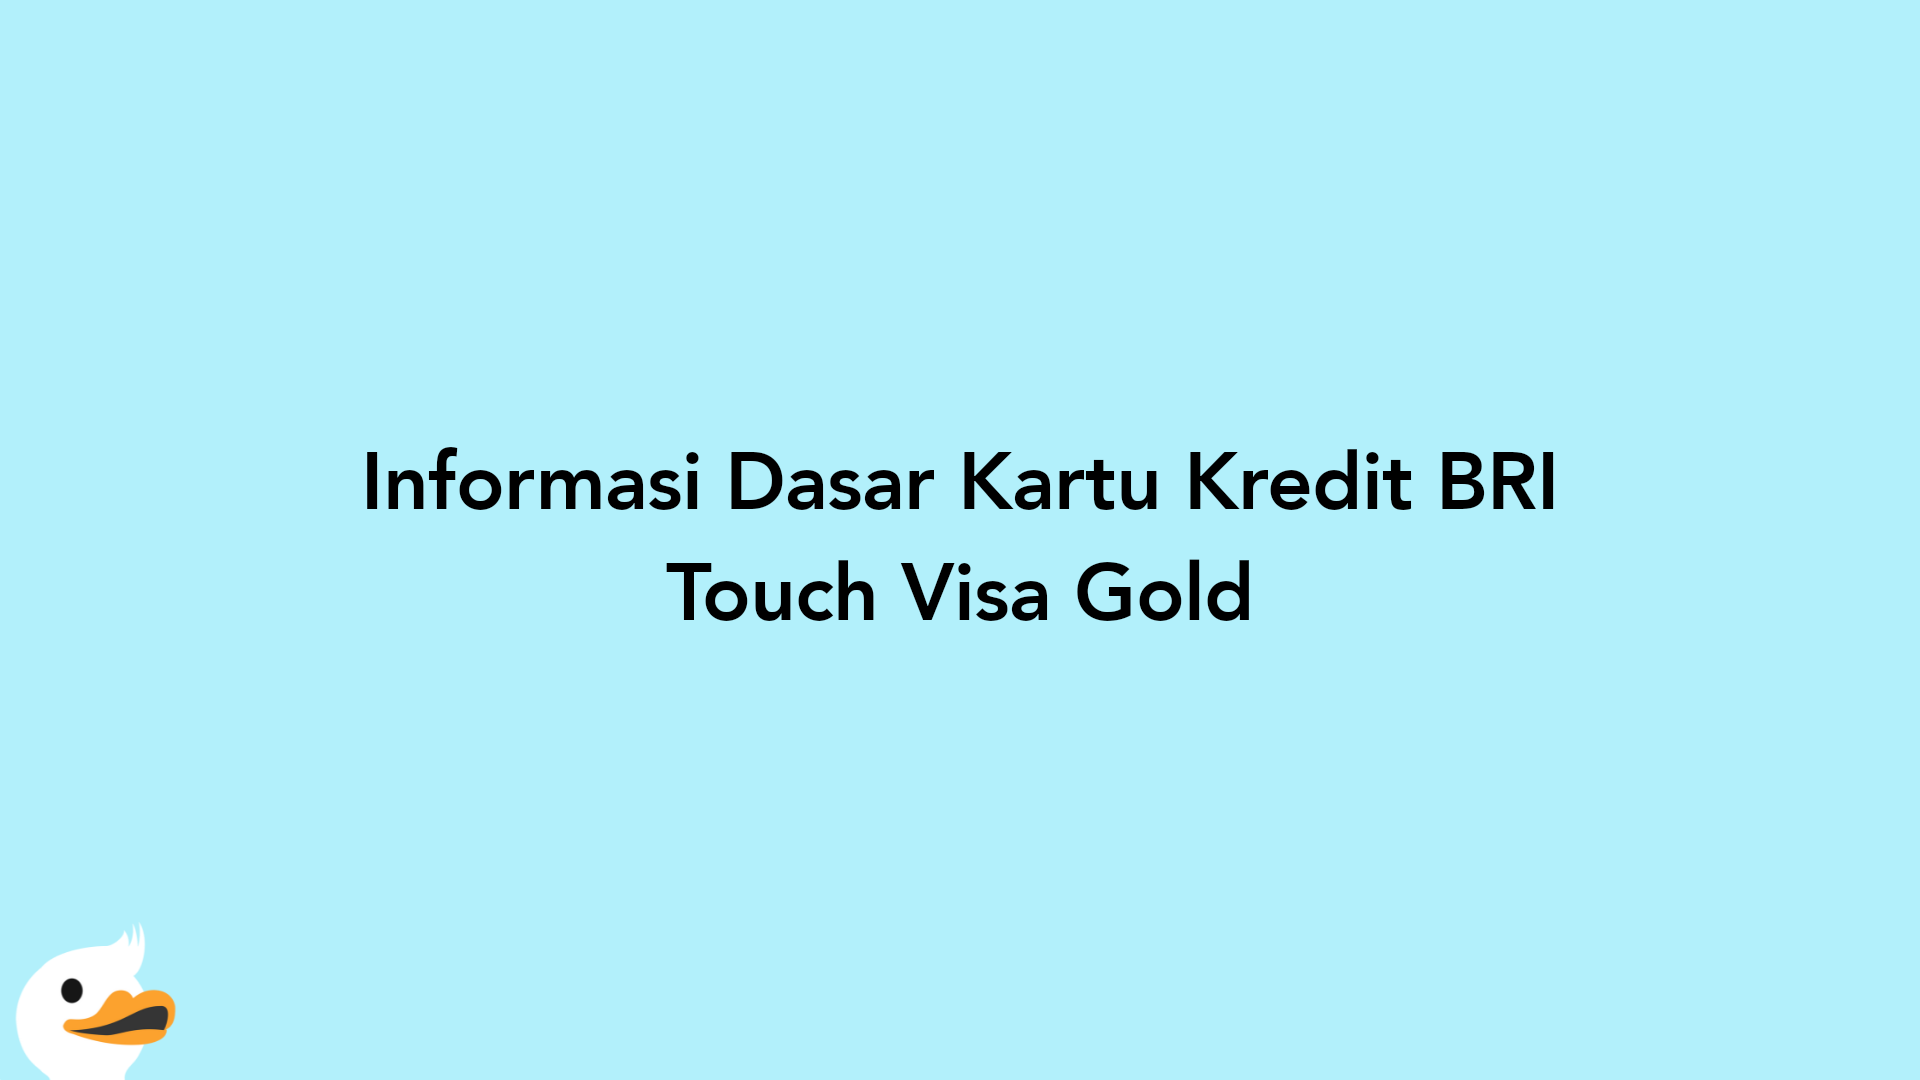 Informasi Dasar Kartu Kredit BRI Touch Visa Gold